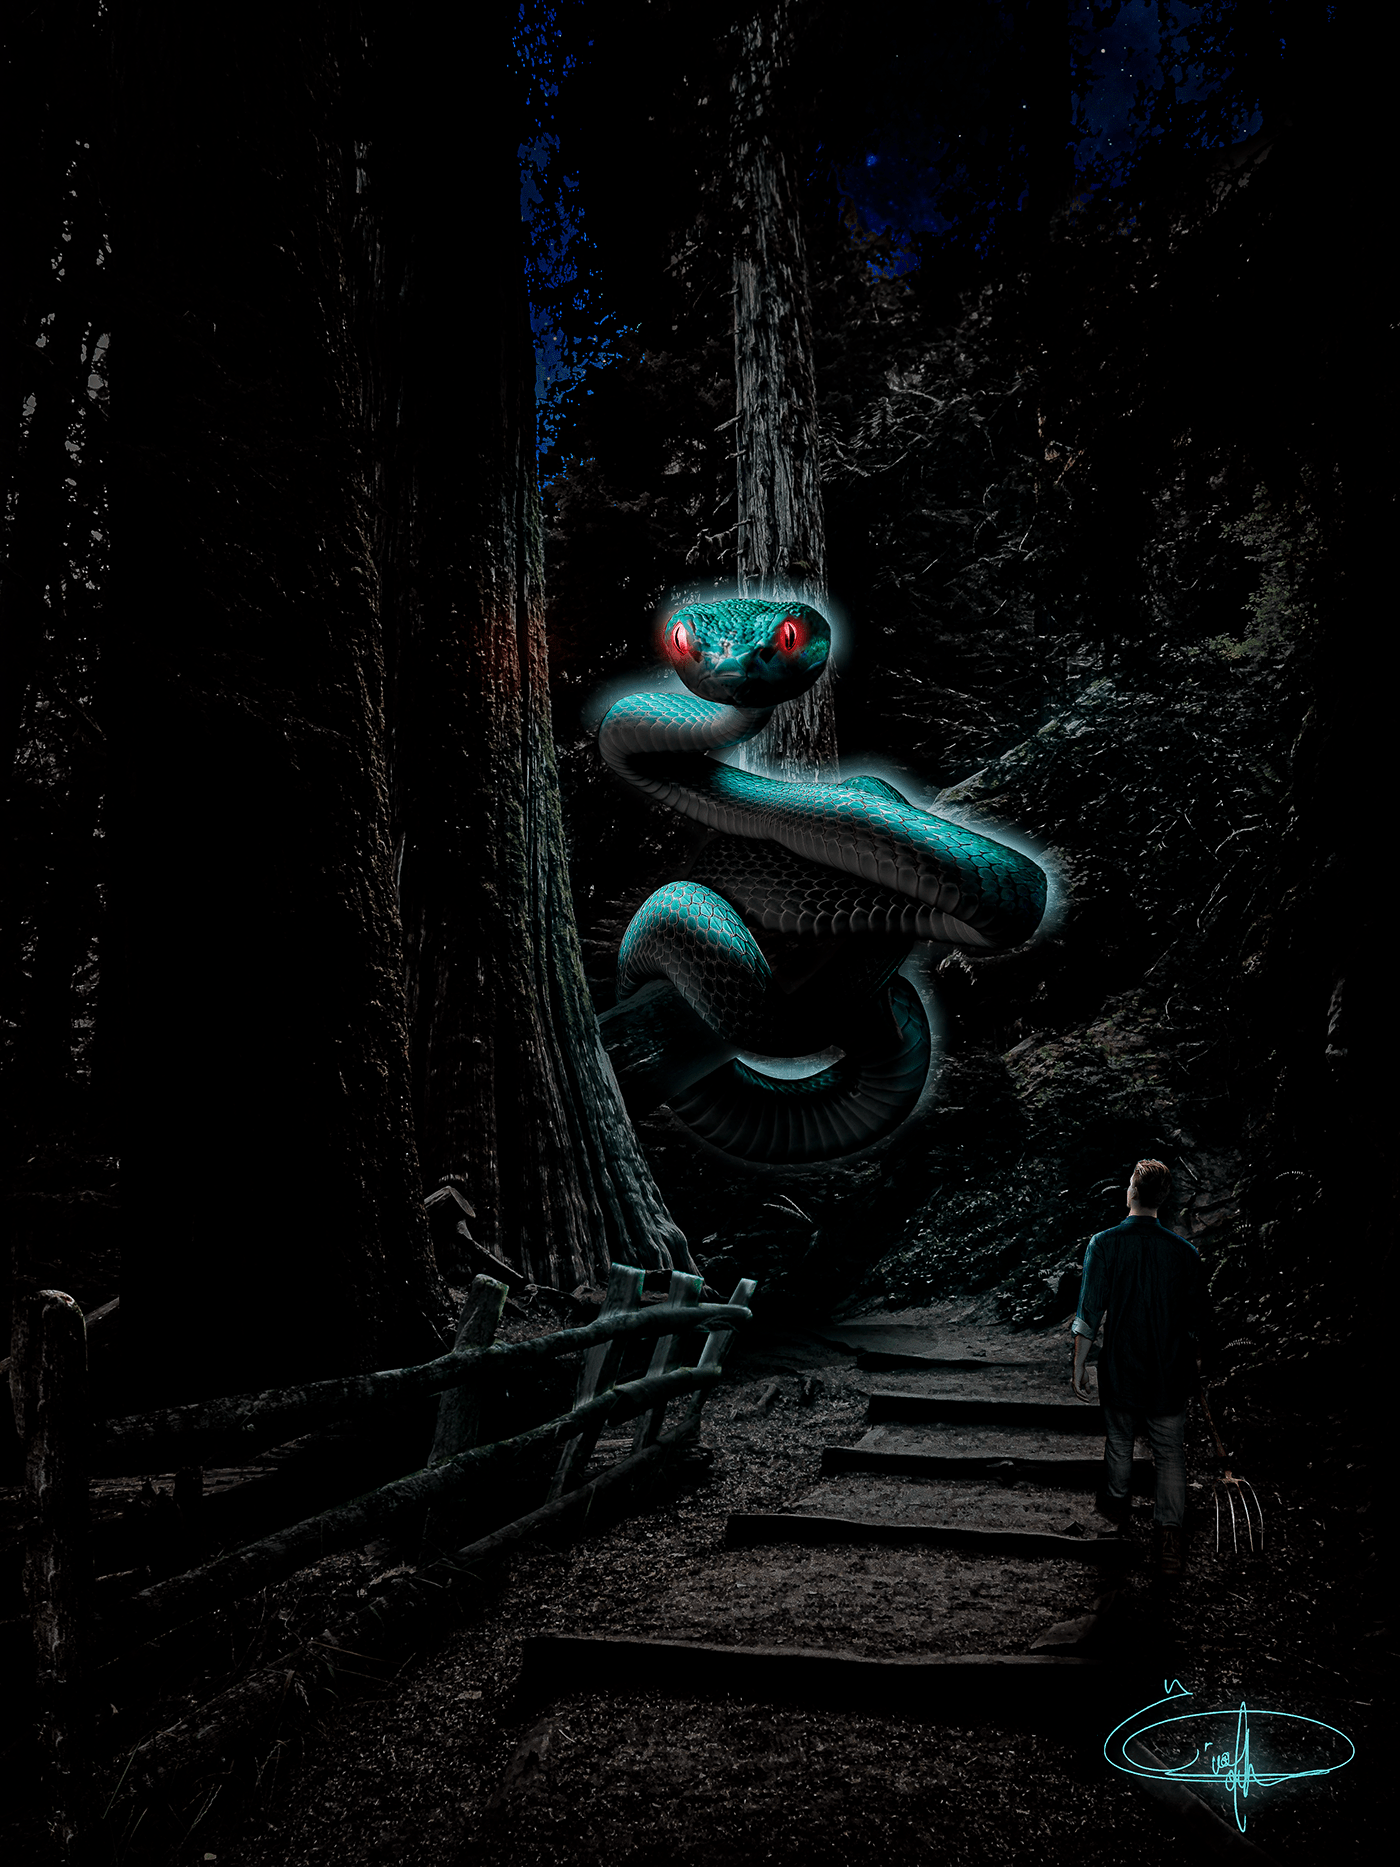 caçador cobra florest floresta monster monstro night noite snake wood concept art arte conceitual